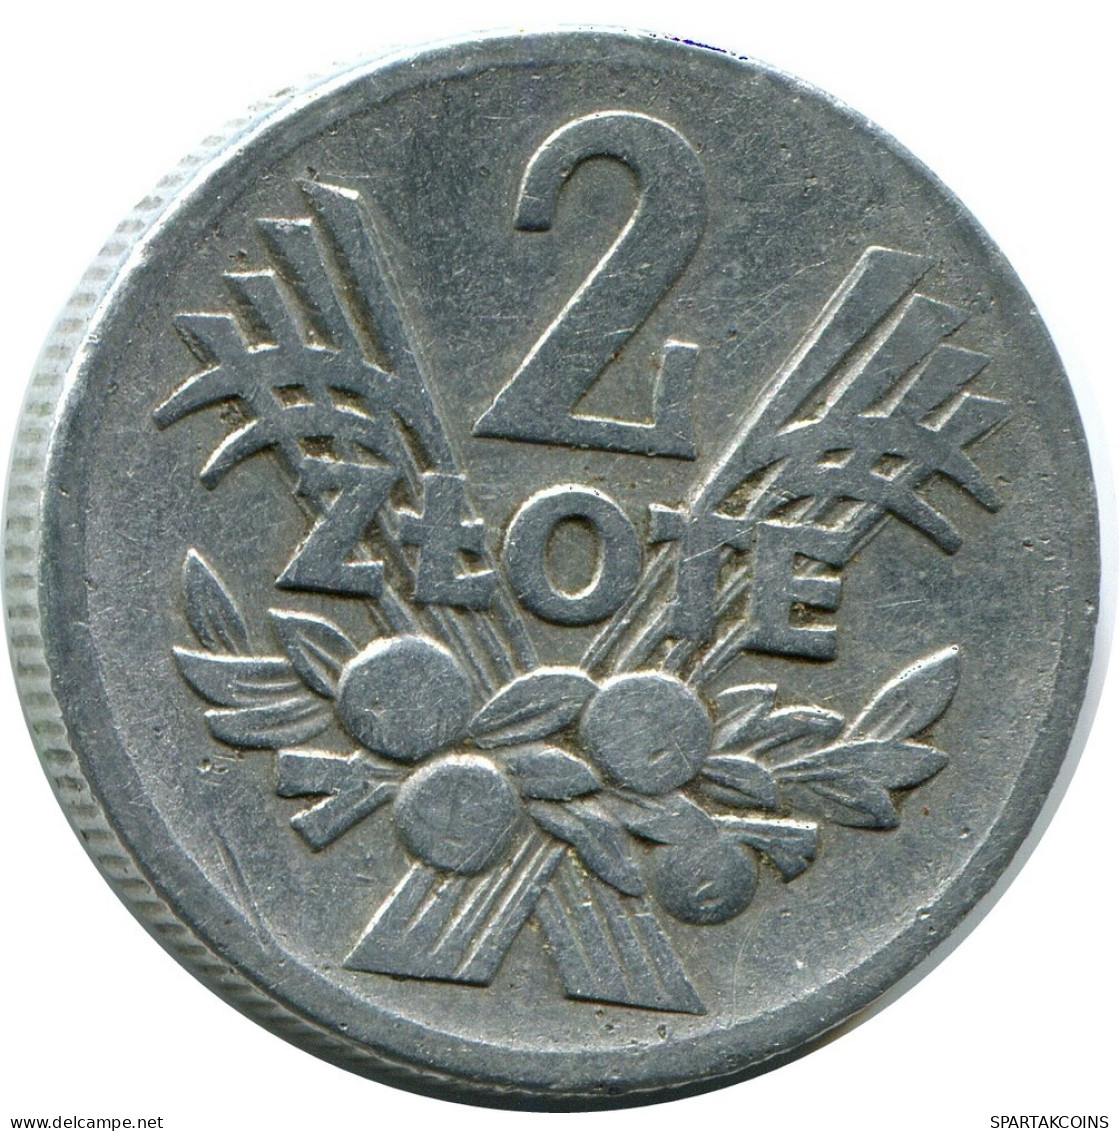 2 ZLOTE 1958 POLAND Coin #AZ317.U.A - Poland